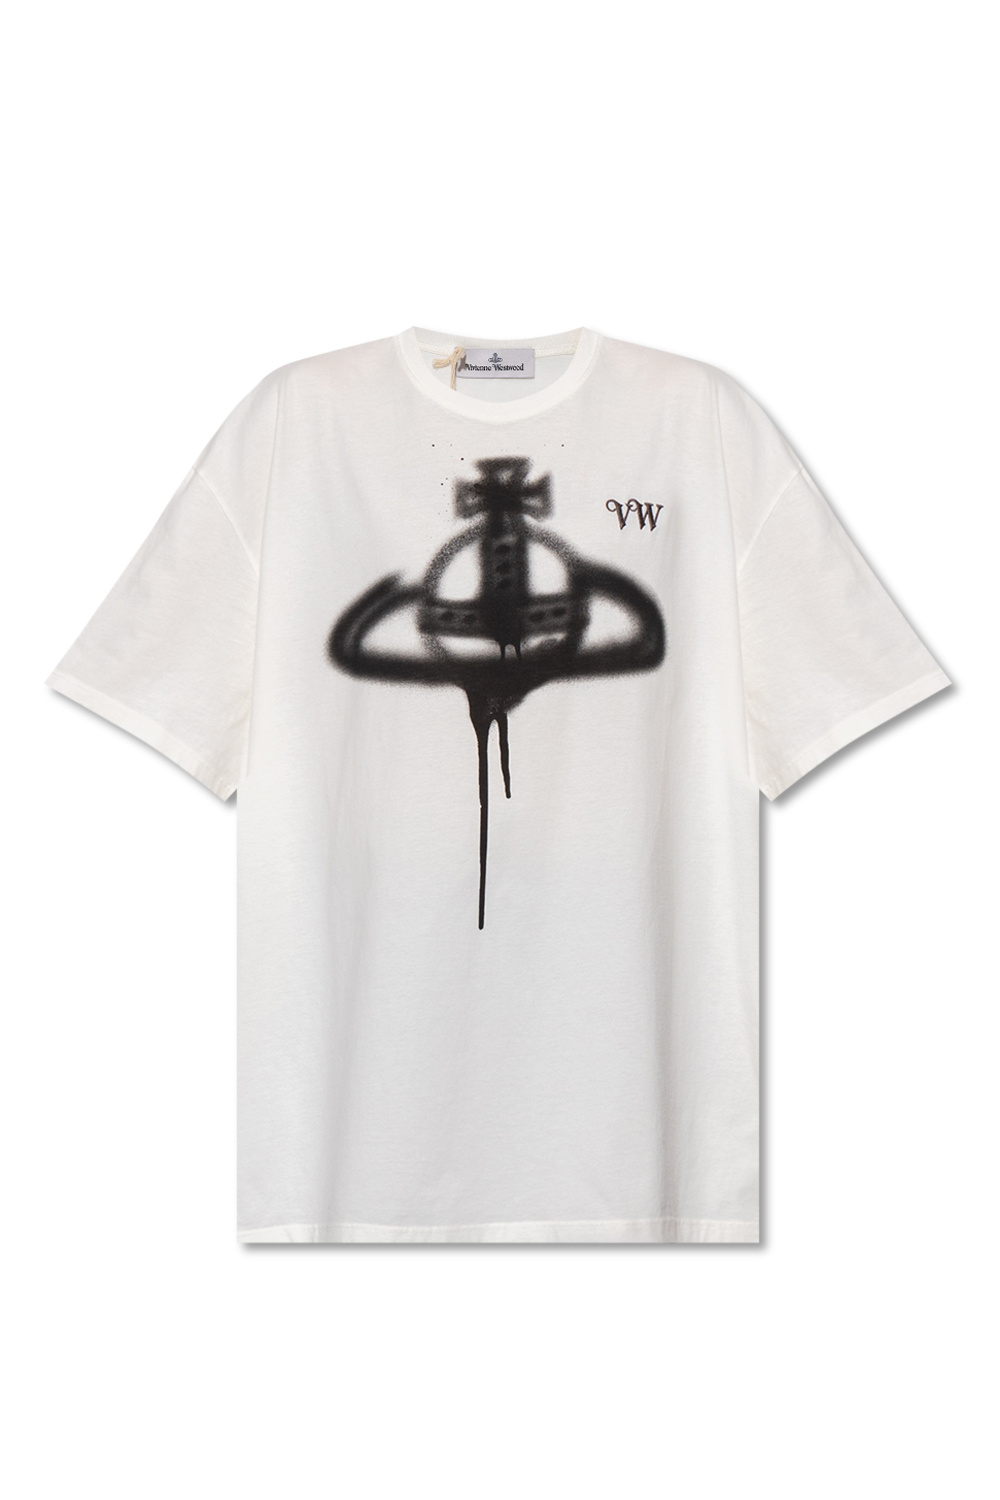 lanvin T mit IetpShops logo - sweatshirt shirt - item Norway with - stickerei Westwood logo Vivienne